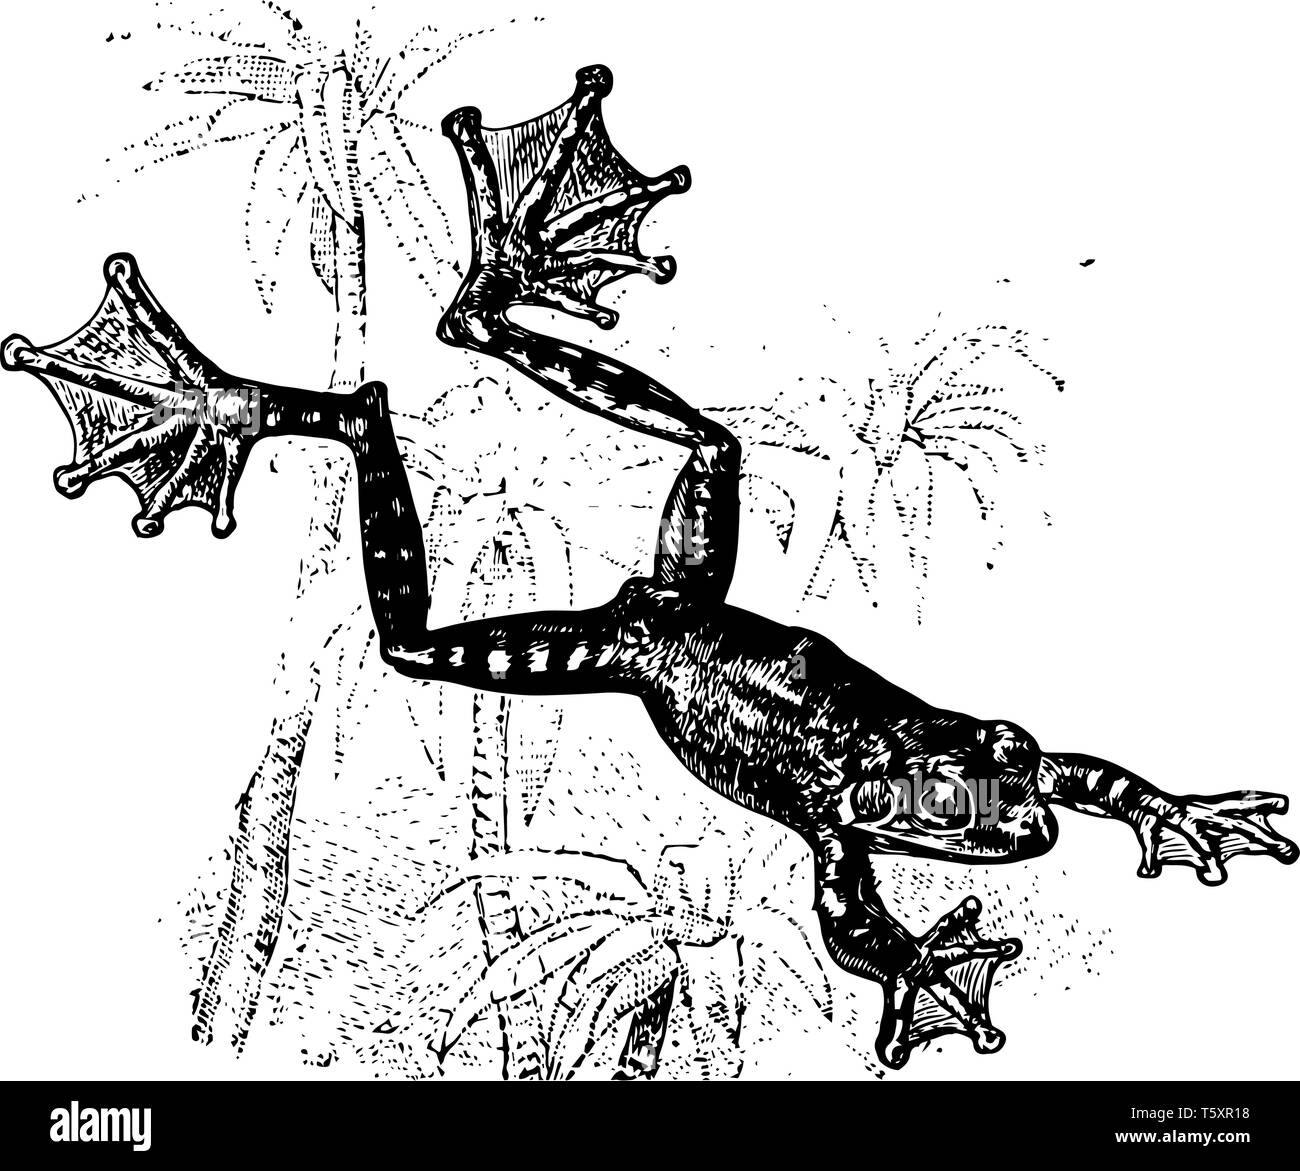 Der fliegende Frosch ist eine Amphibie enorm lange Schwimmhäuten zwischen  den Zehen haben, vintage Strichzeichnung oder Gravur Abbildung  Stock-Vektorgrafik - Alamy